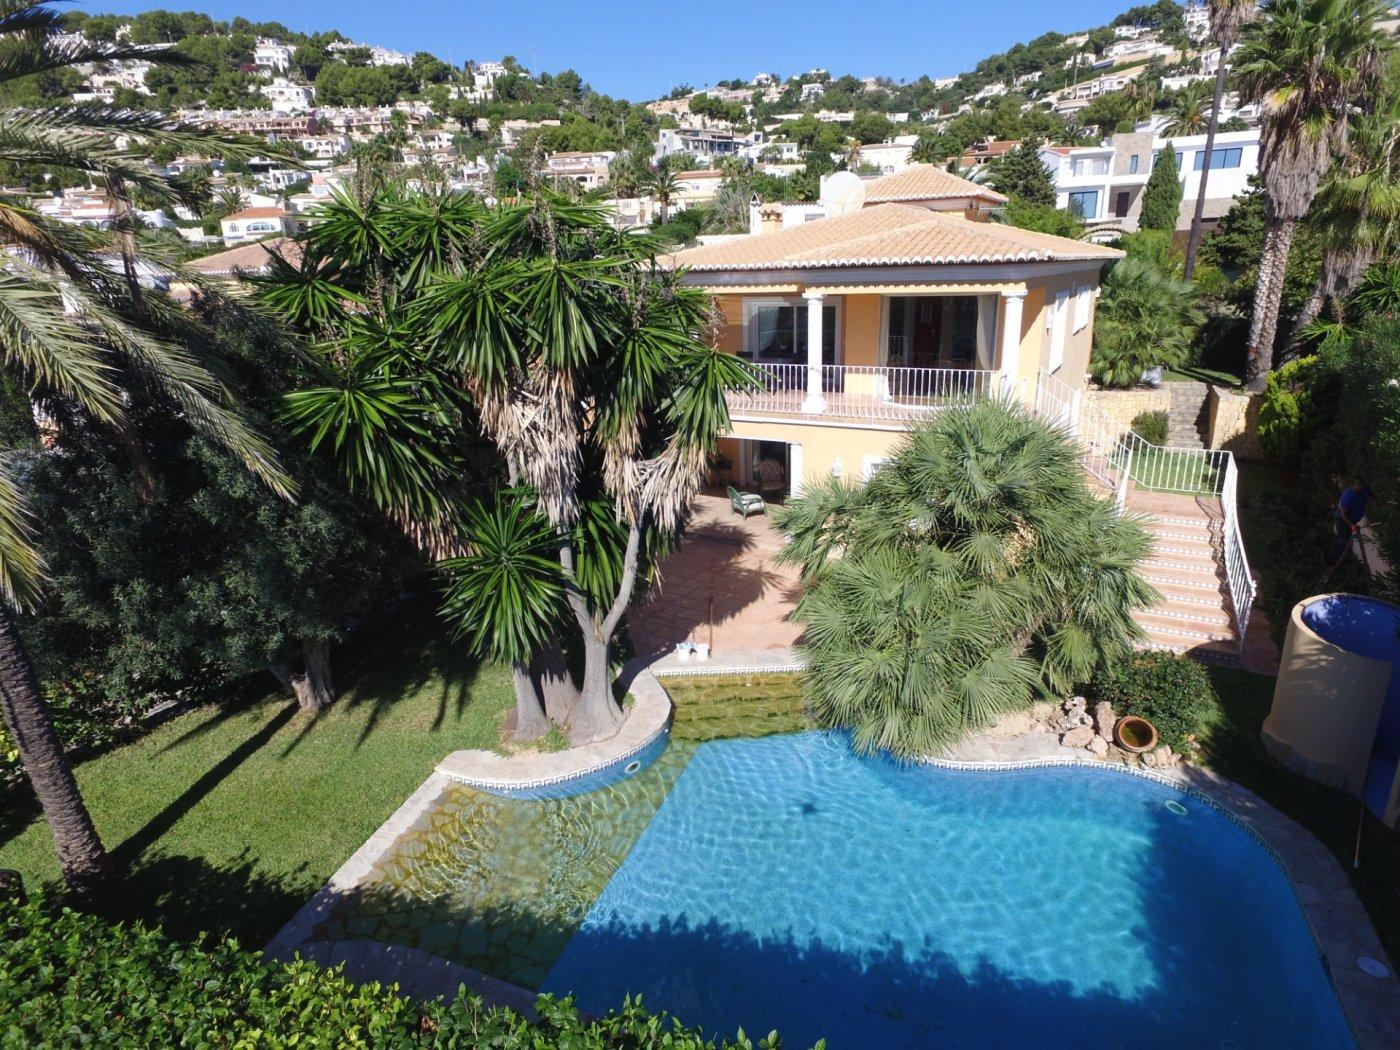 Mediterranean style luxury villa in Moraira